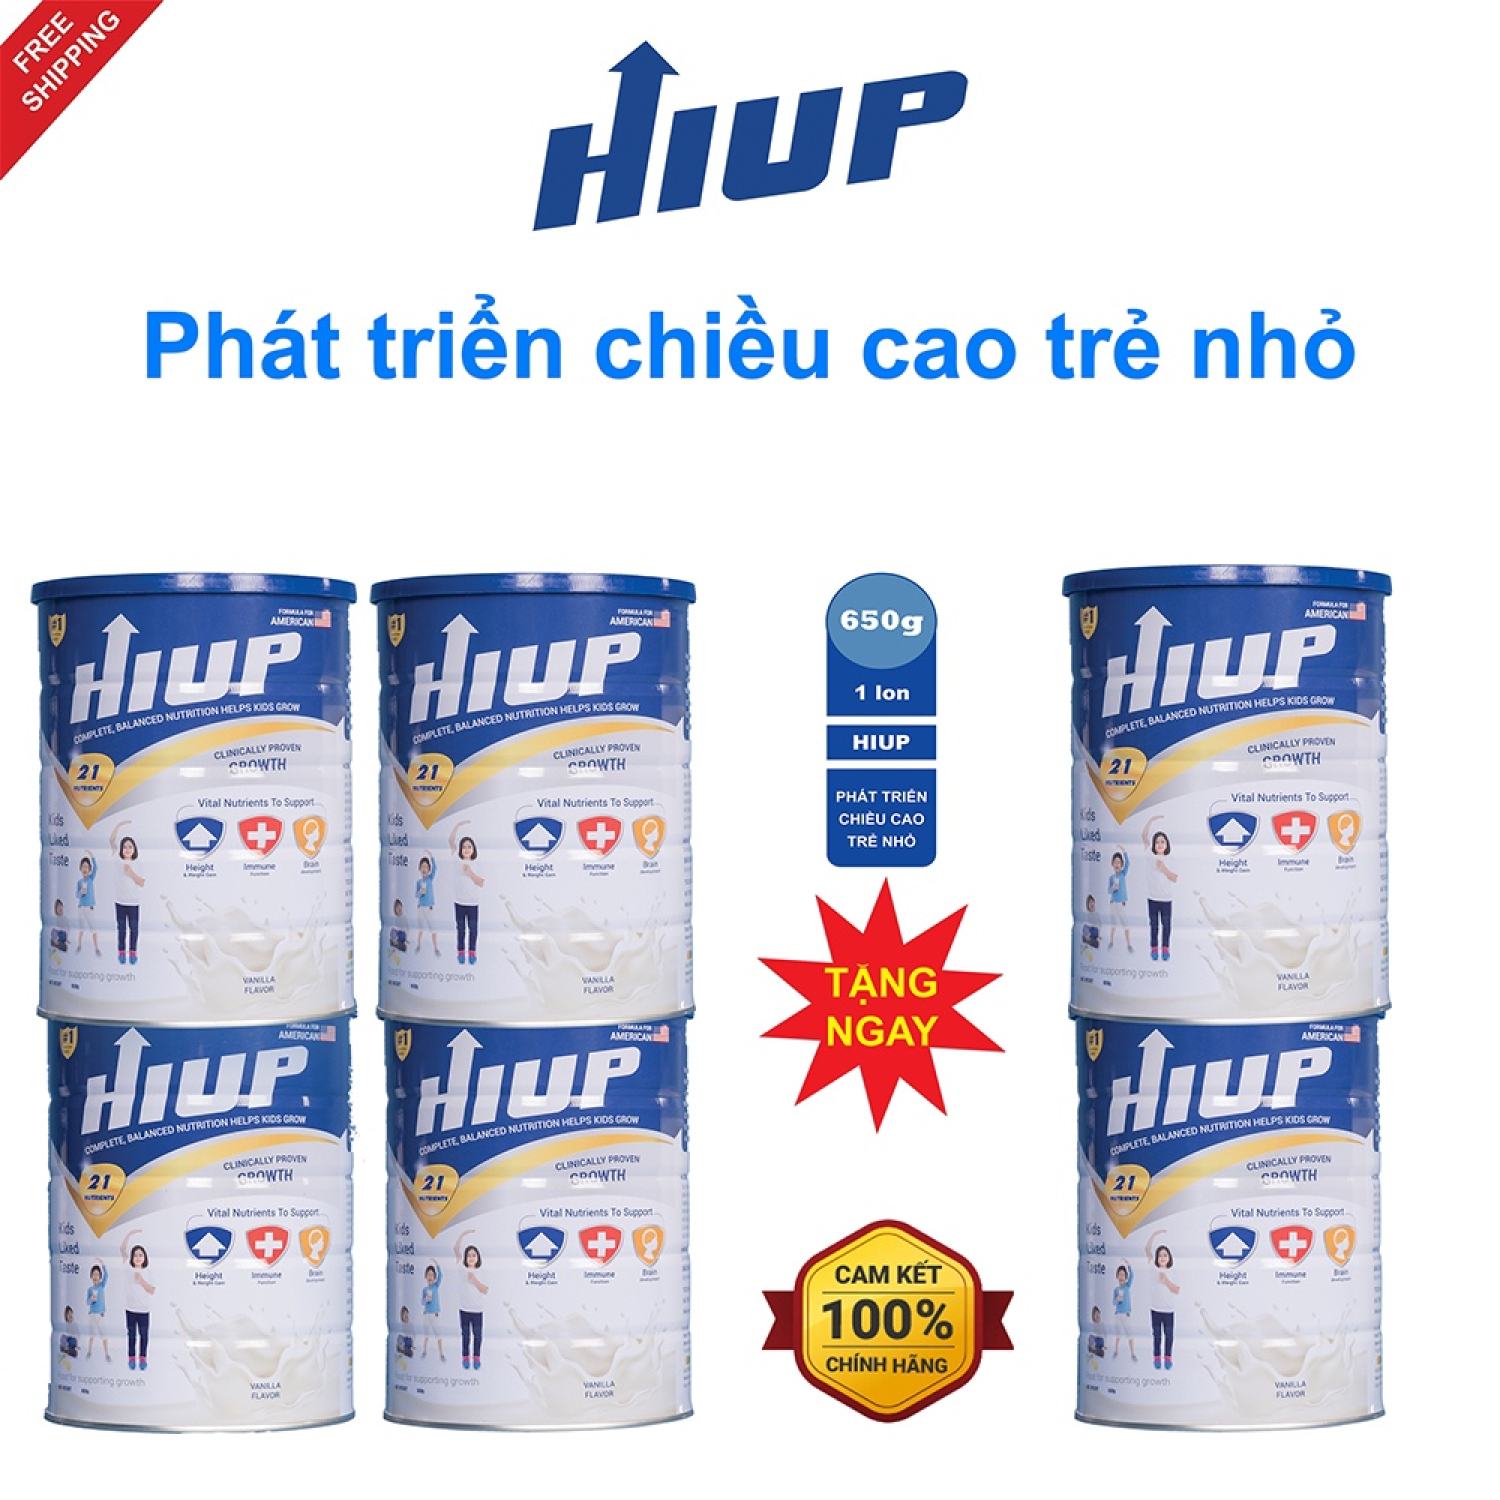 Combo mua 4 tặng 2 Unical và 1 hộp sữa bột HIUP tăng chiều cao cho trẻ từ 2 đến 15 tuổi thumbnail